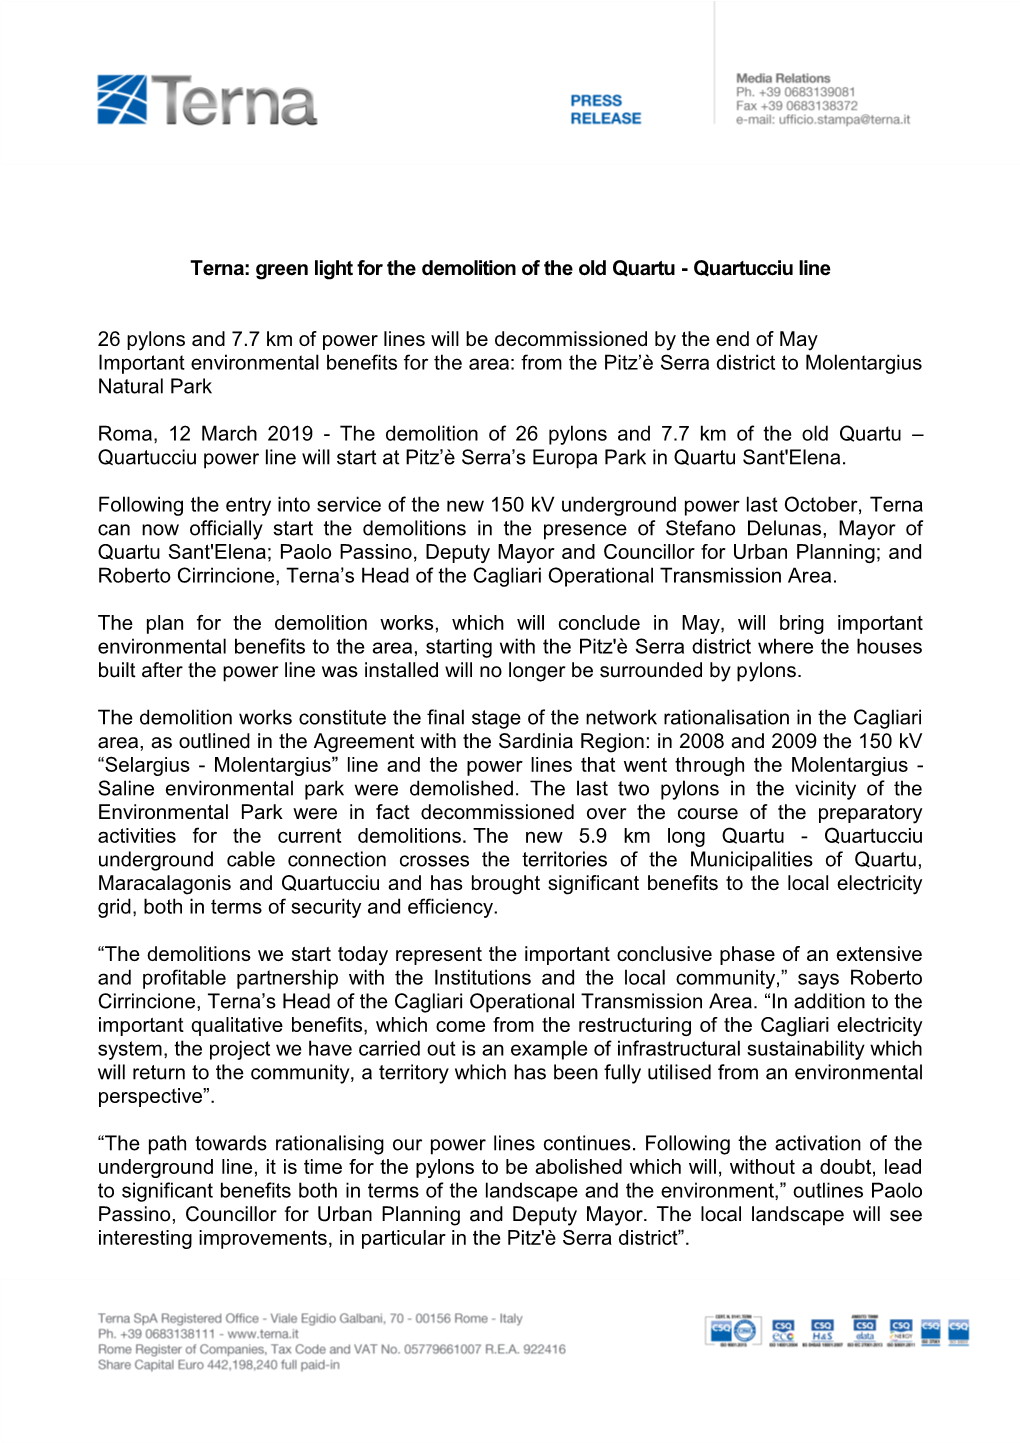 Terna: Green Light for the Demolition of the Old Quartu - Quartucciu Line